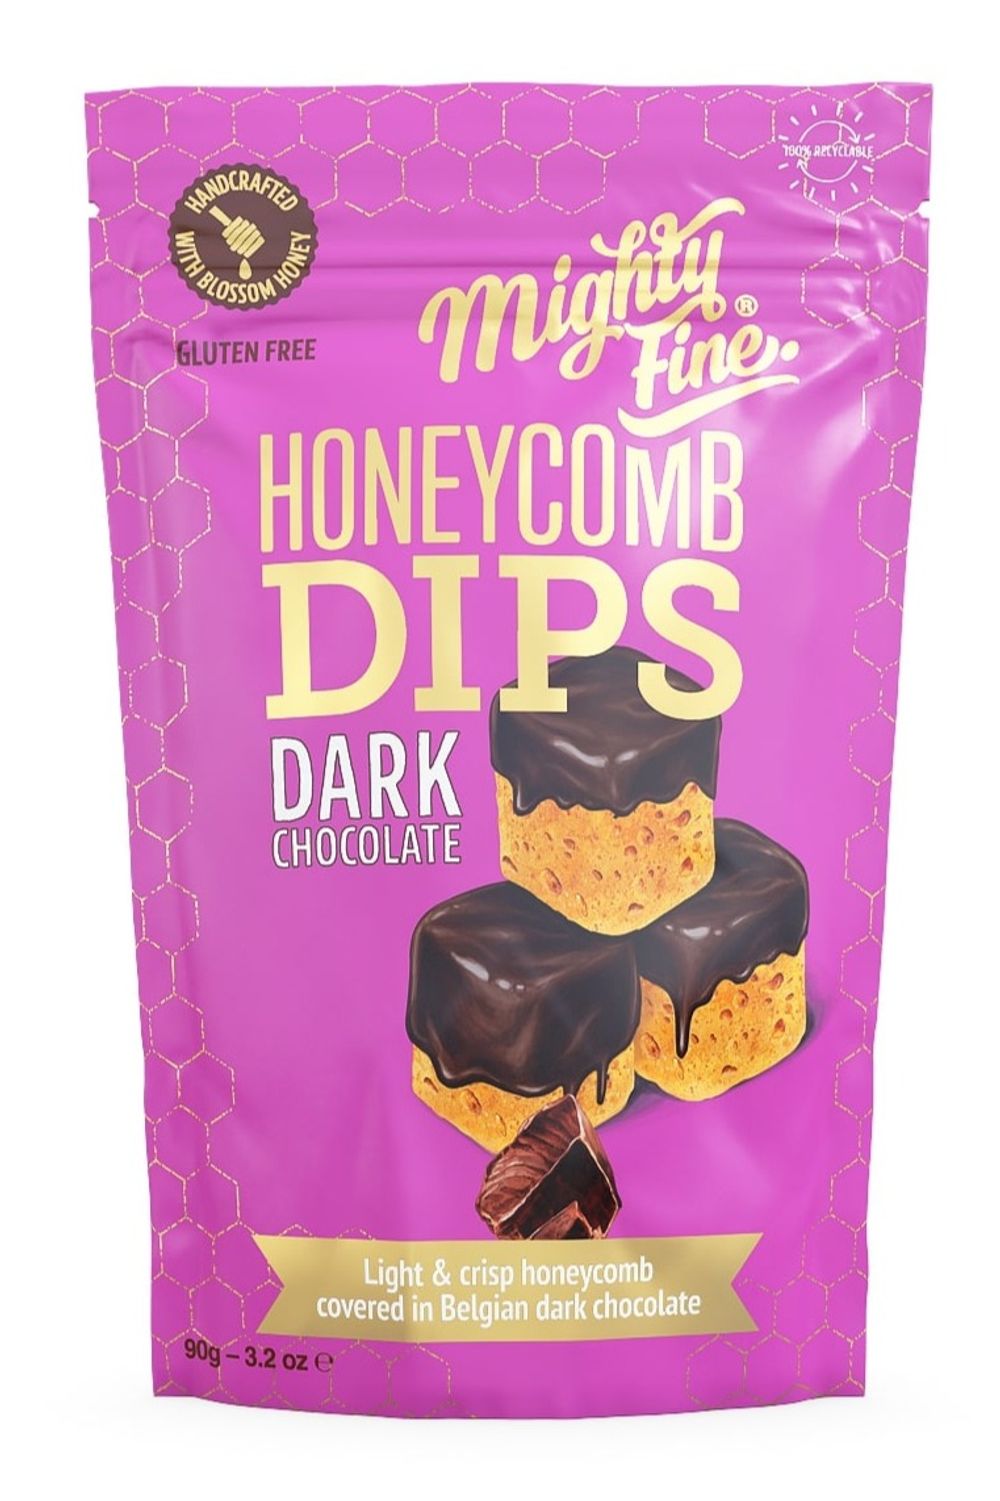 Dark Chocolate Honeycomb Dips